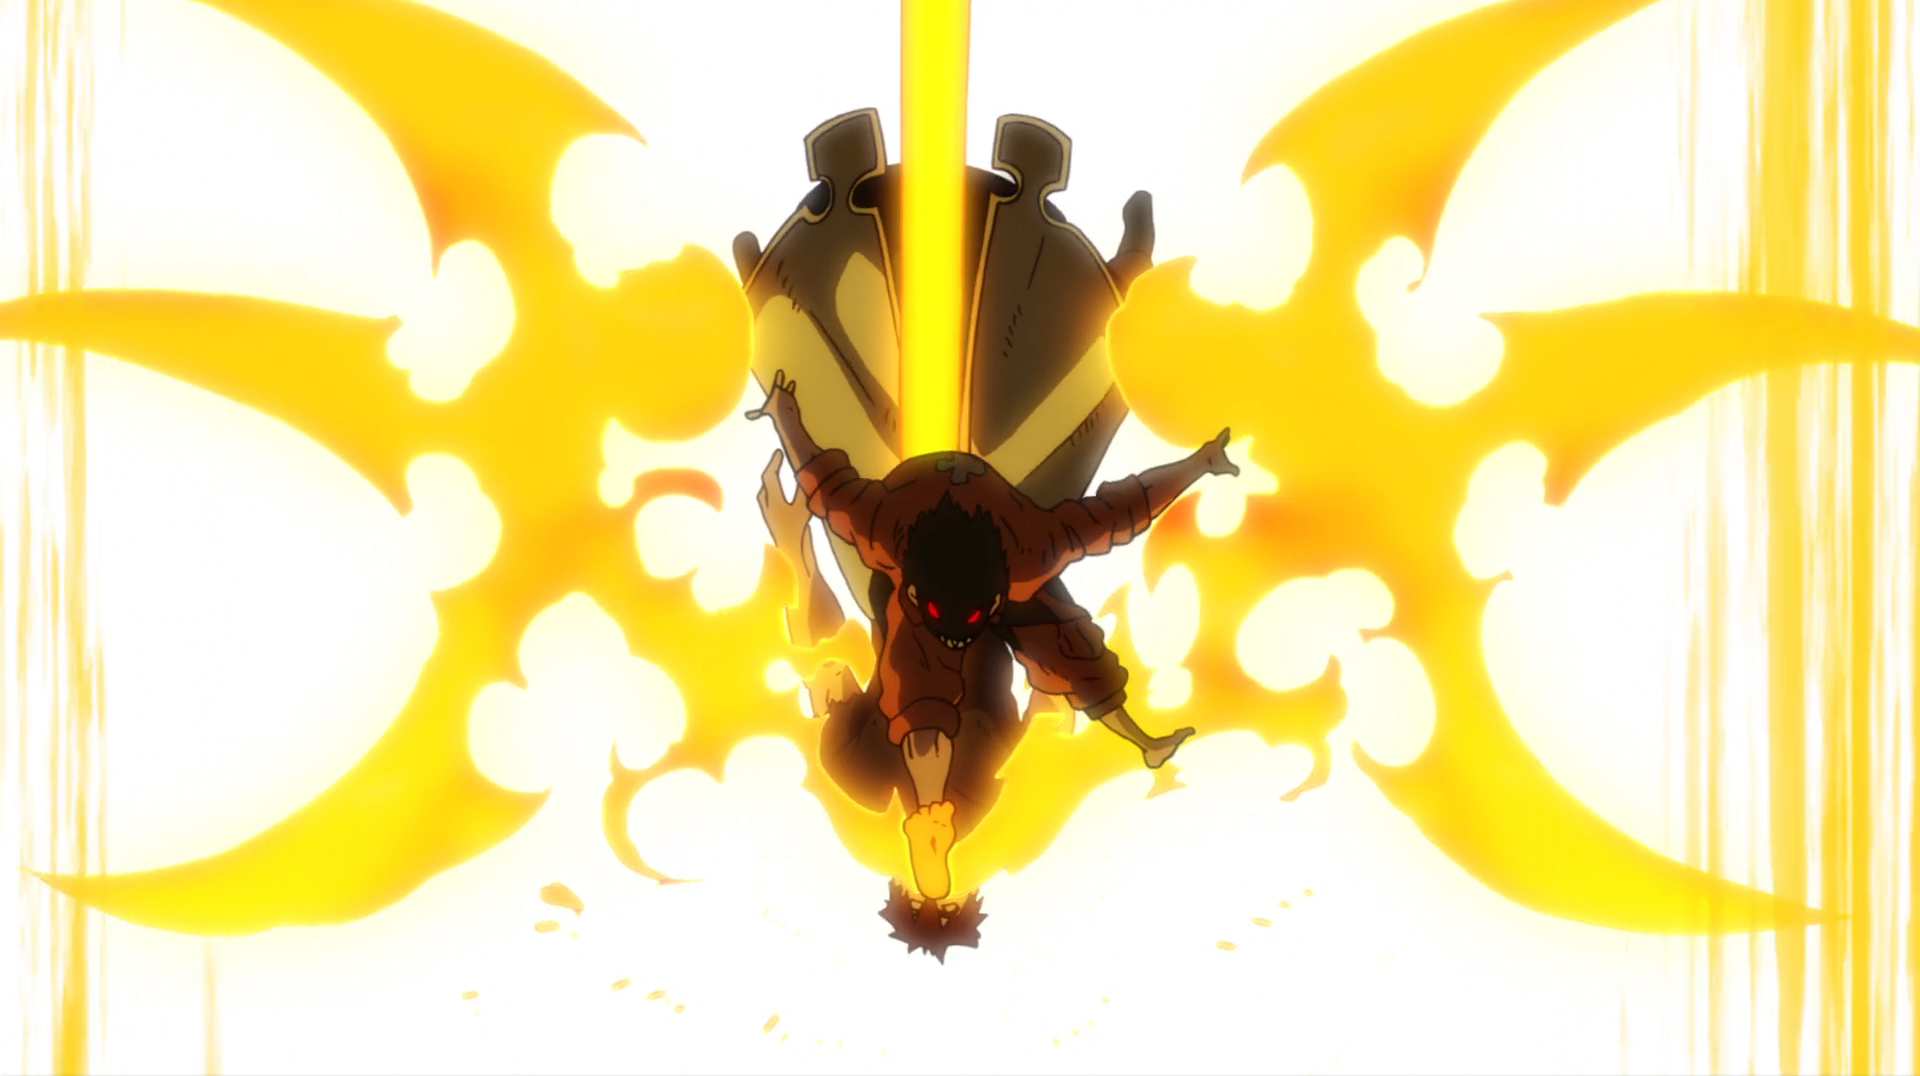 Shinra não Perdoa Nem As Freiras [Fire Force #fireforce #anime #s